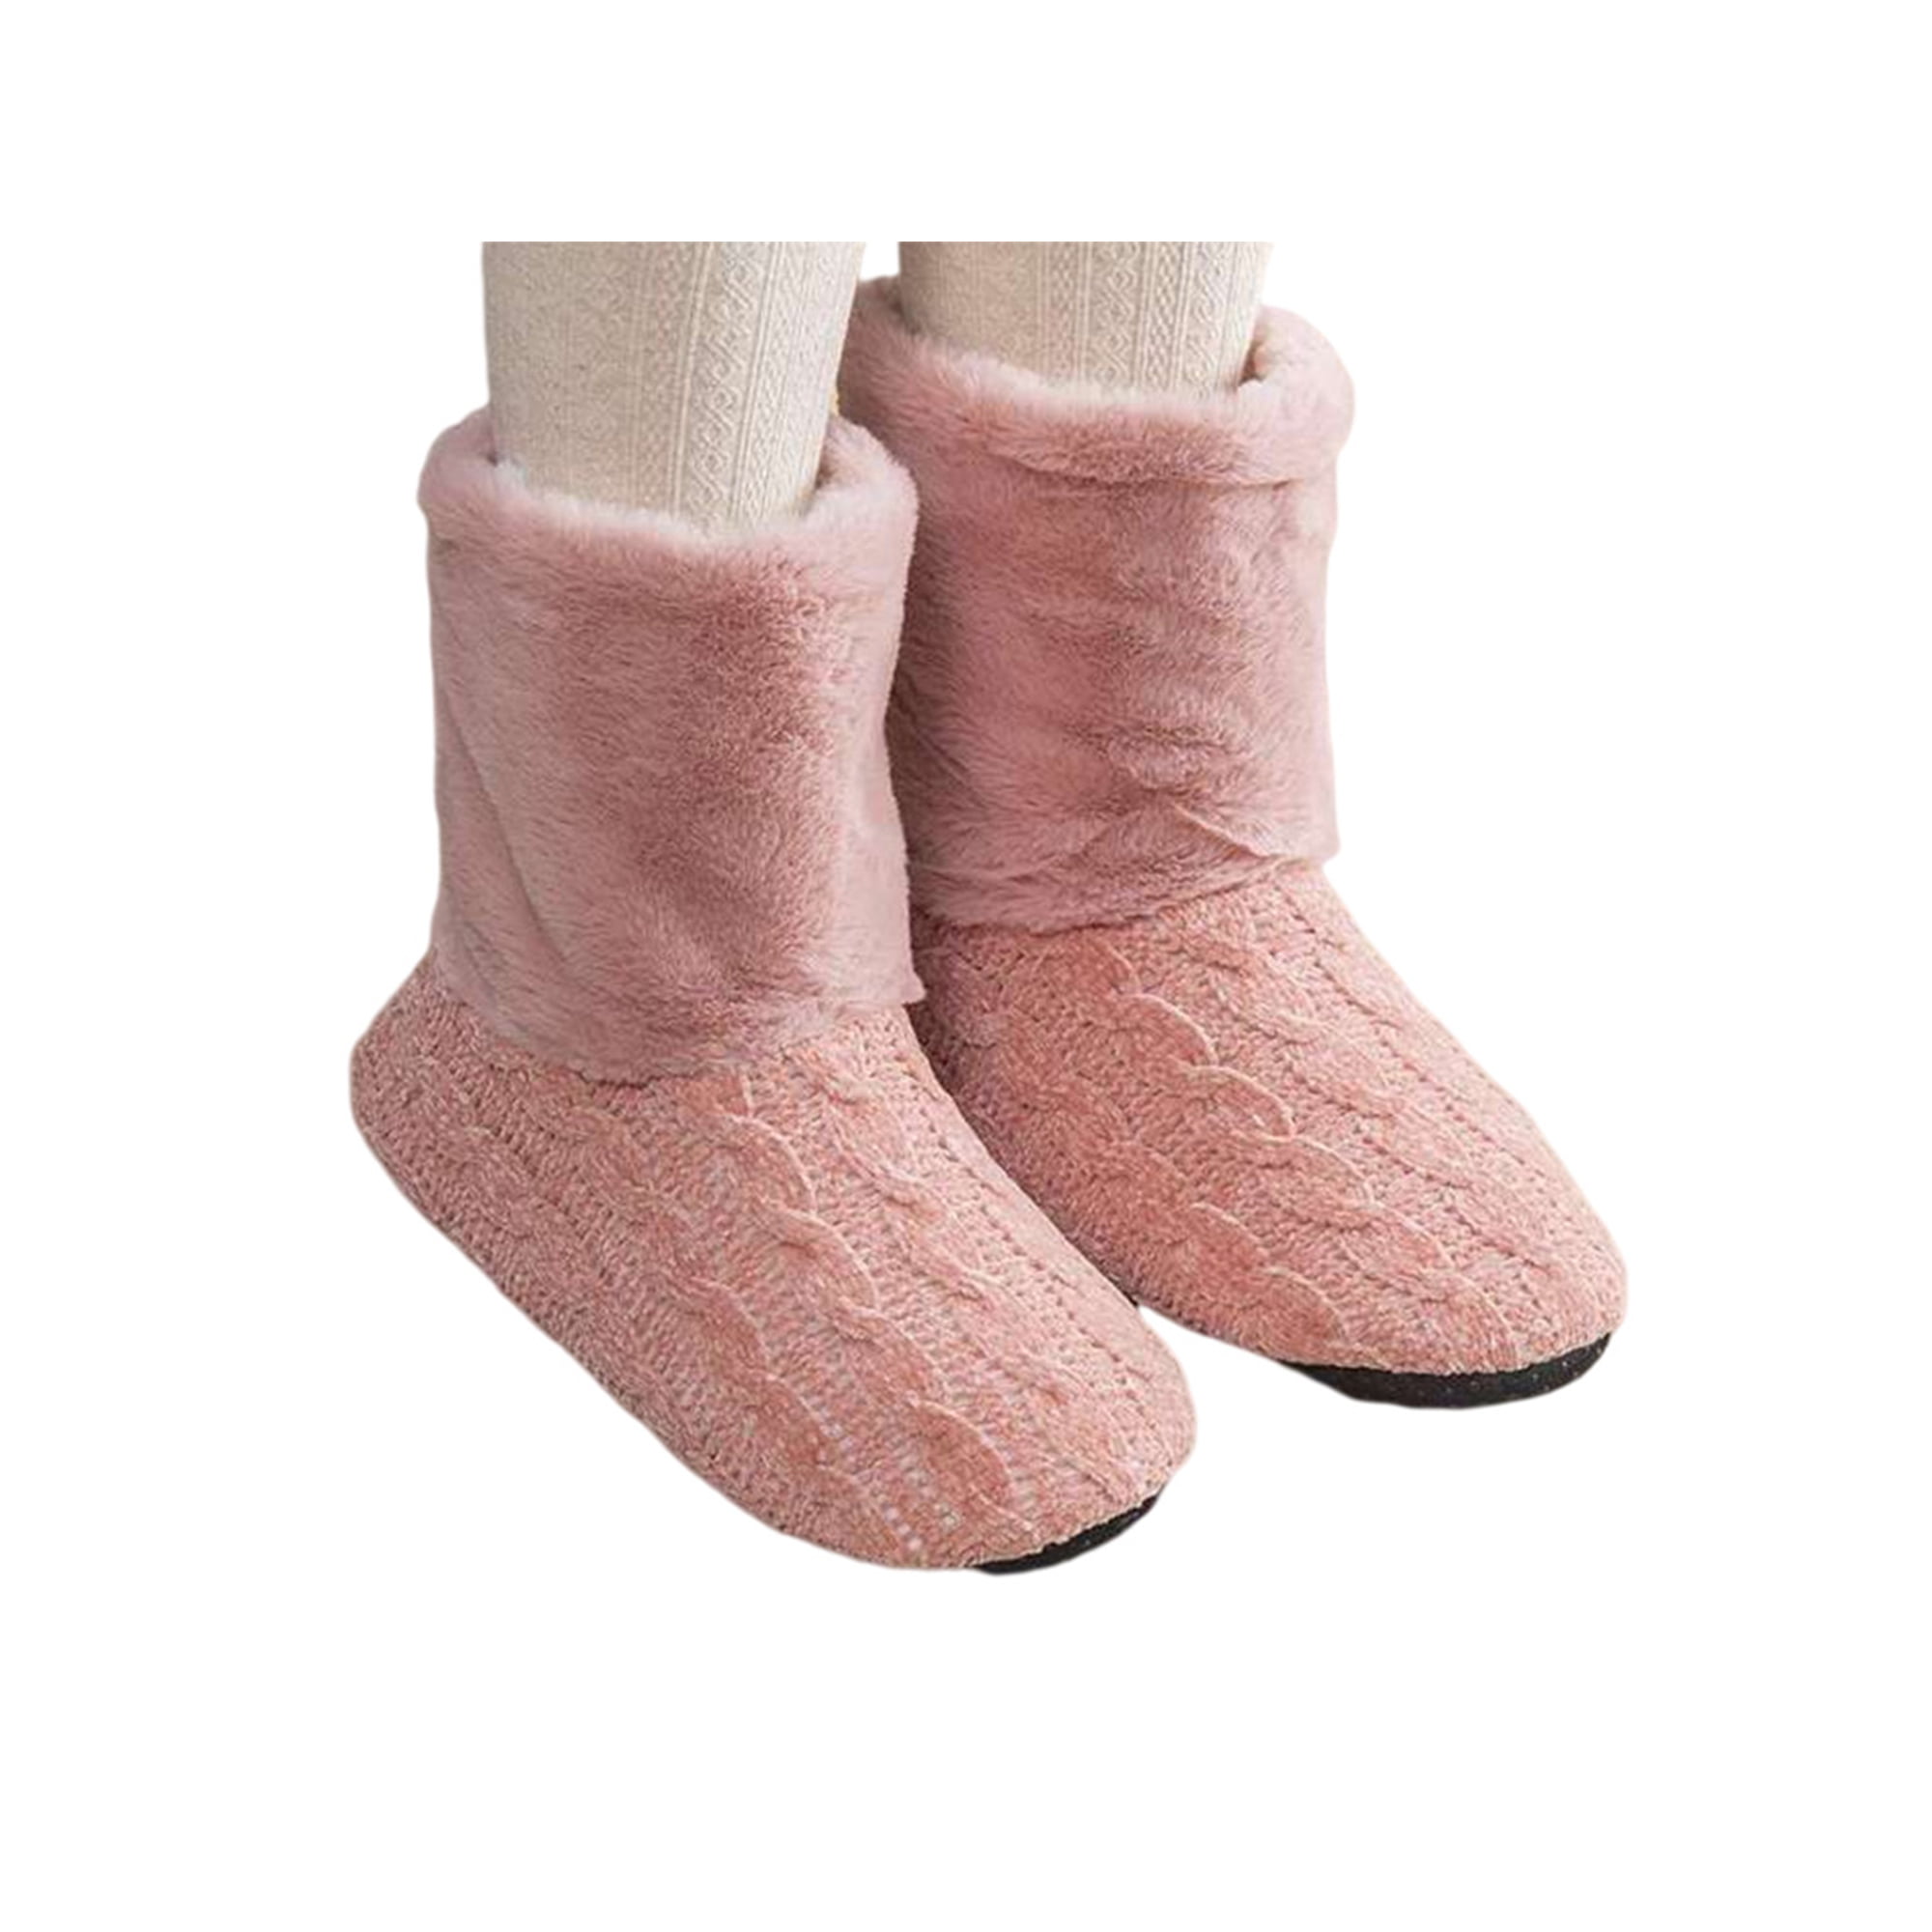 Kesitin Winter House for Women Plush Lining Slip-on Boots Slipper Walmart.com